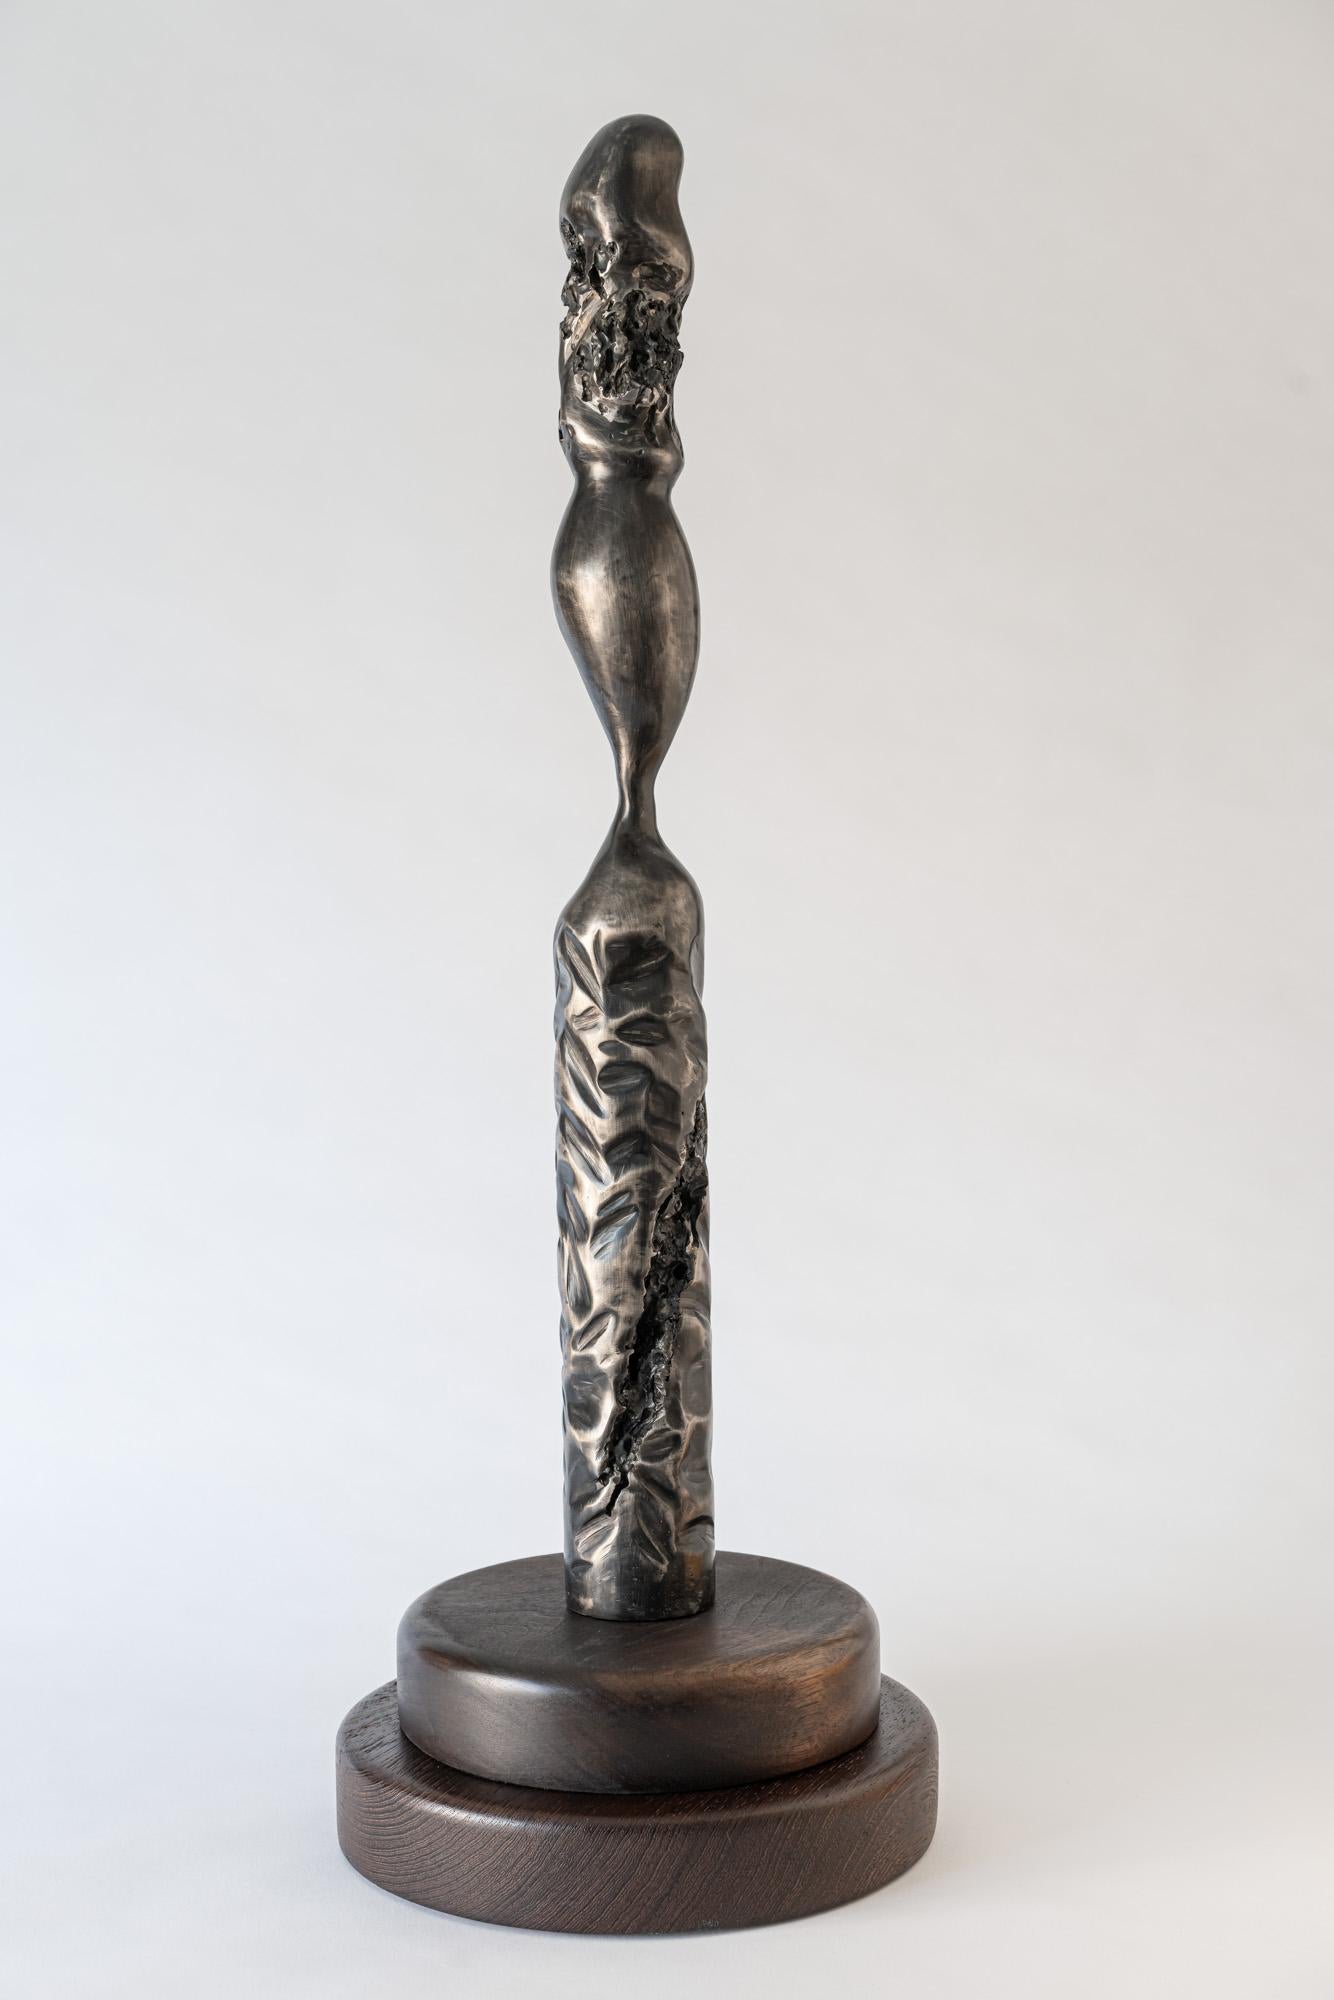 Abstract Metal Steel Sculpture Howard Lewis - 